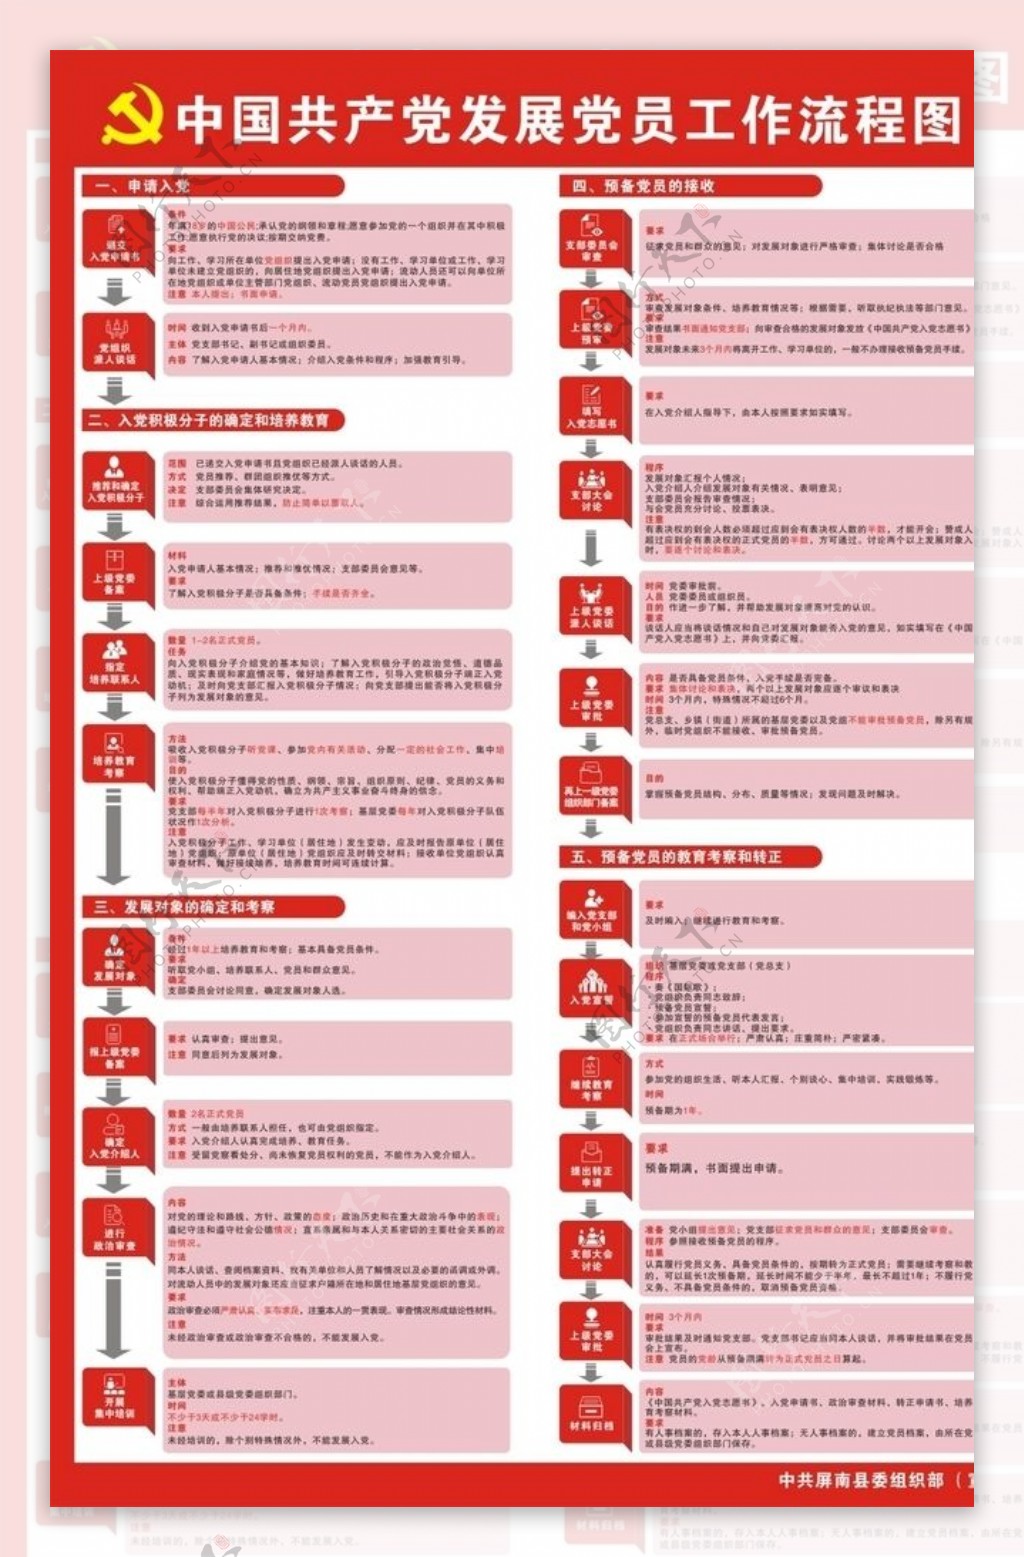 中国共产党发展党员工作流程图